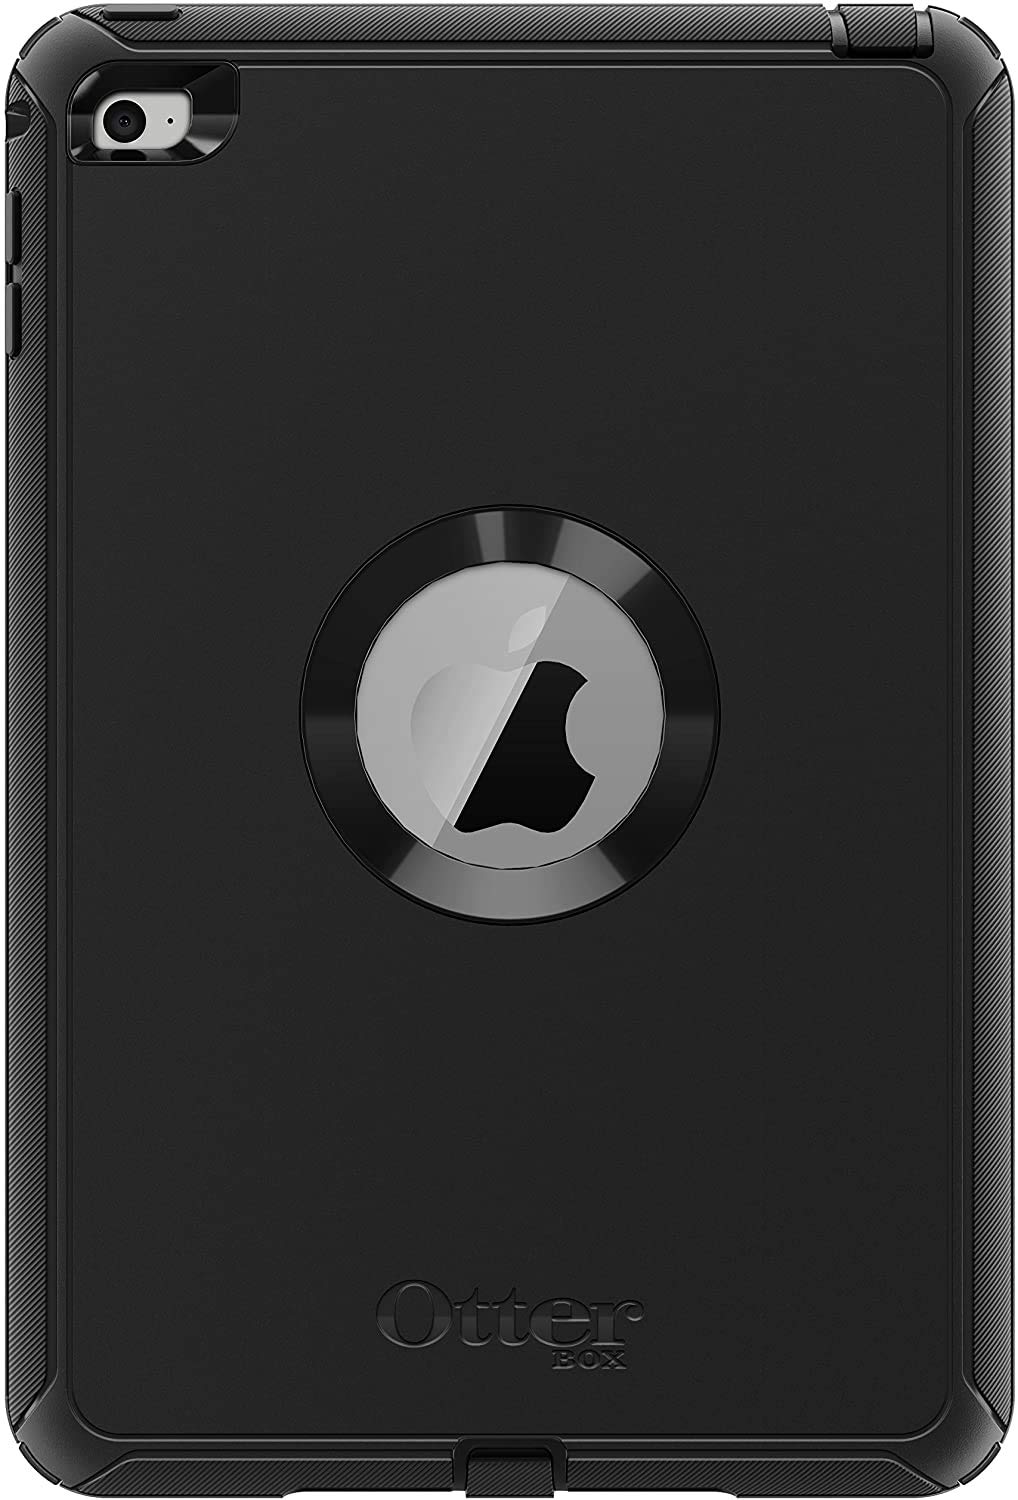 OtterBox Defender Schutzhülle (geeignet für Apple iPad Mini 4) schwarz